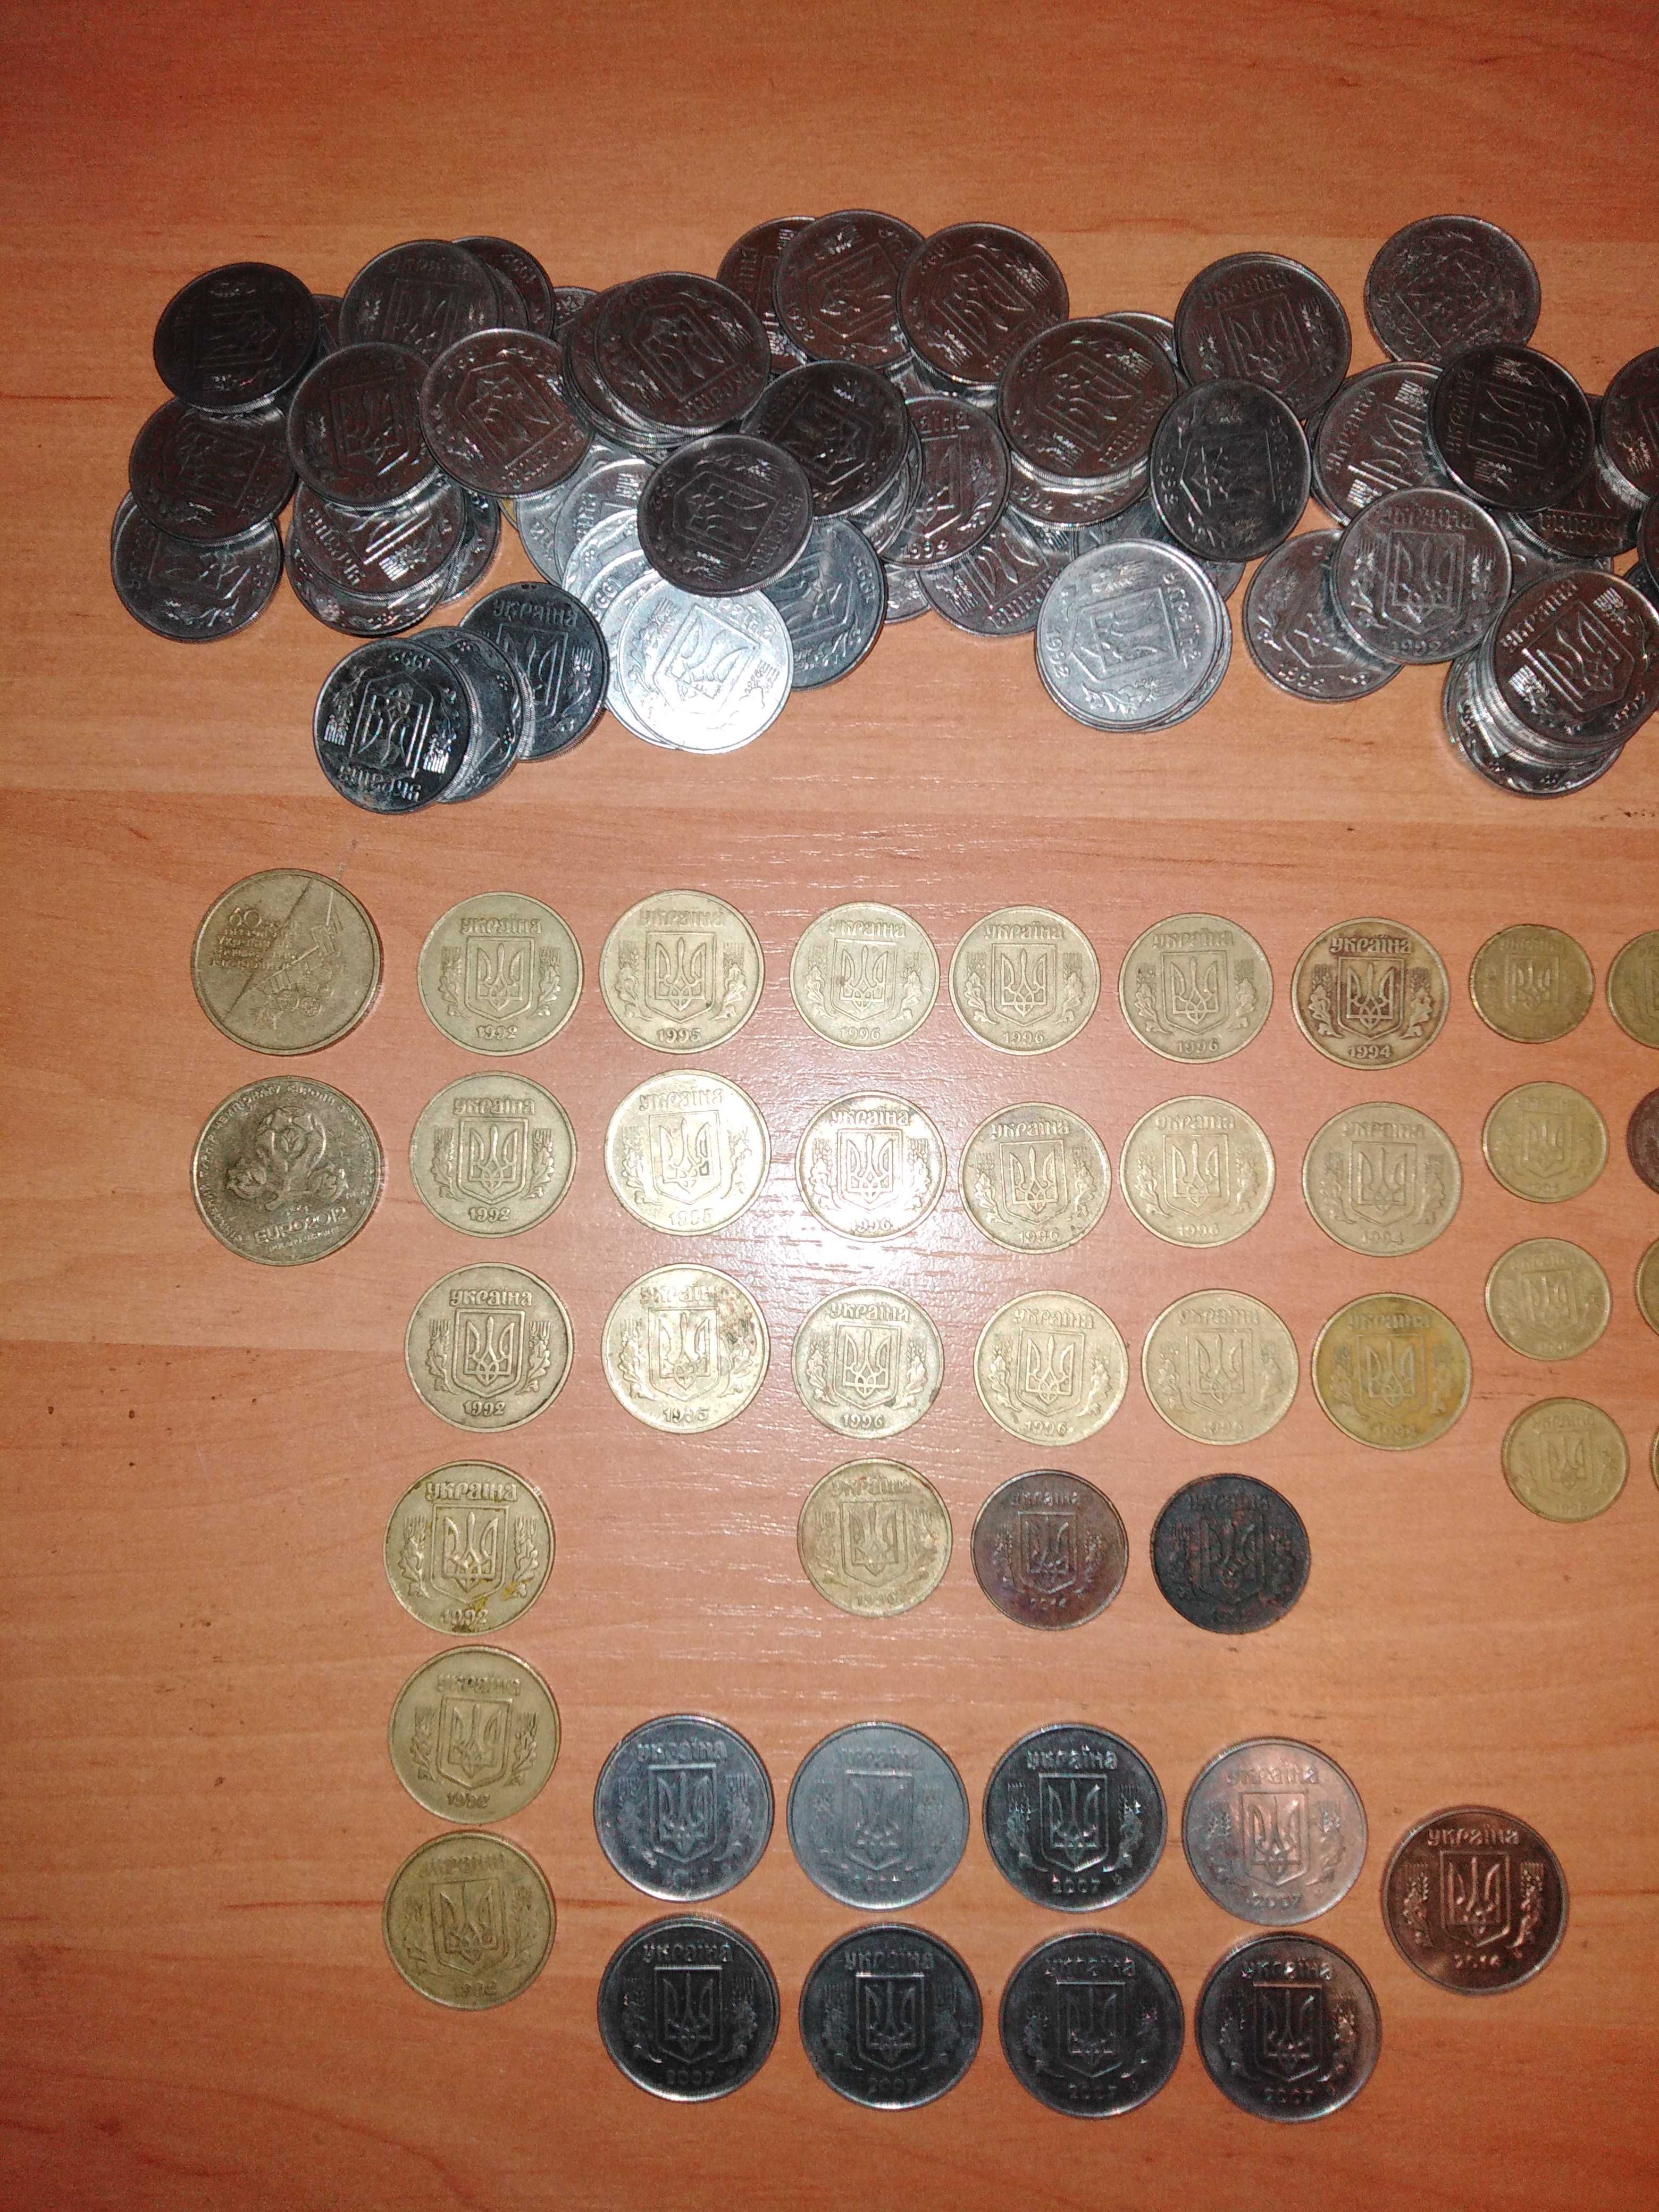 Продам редкие монеты Украины